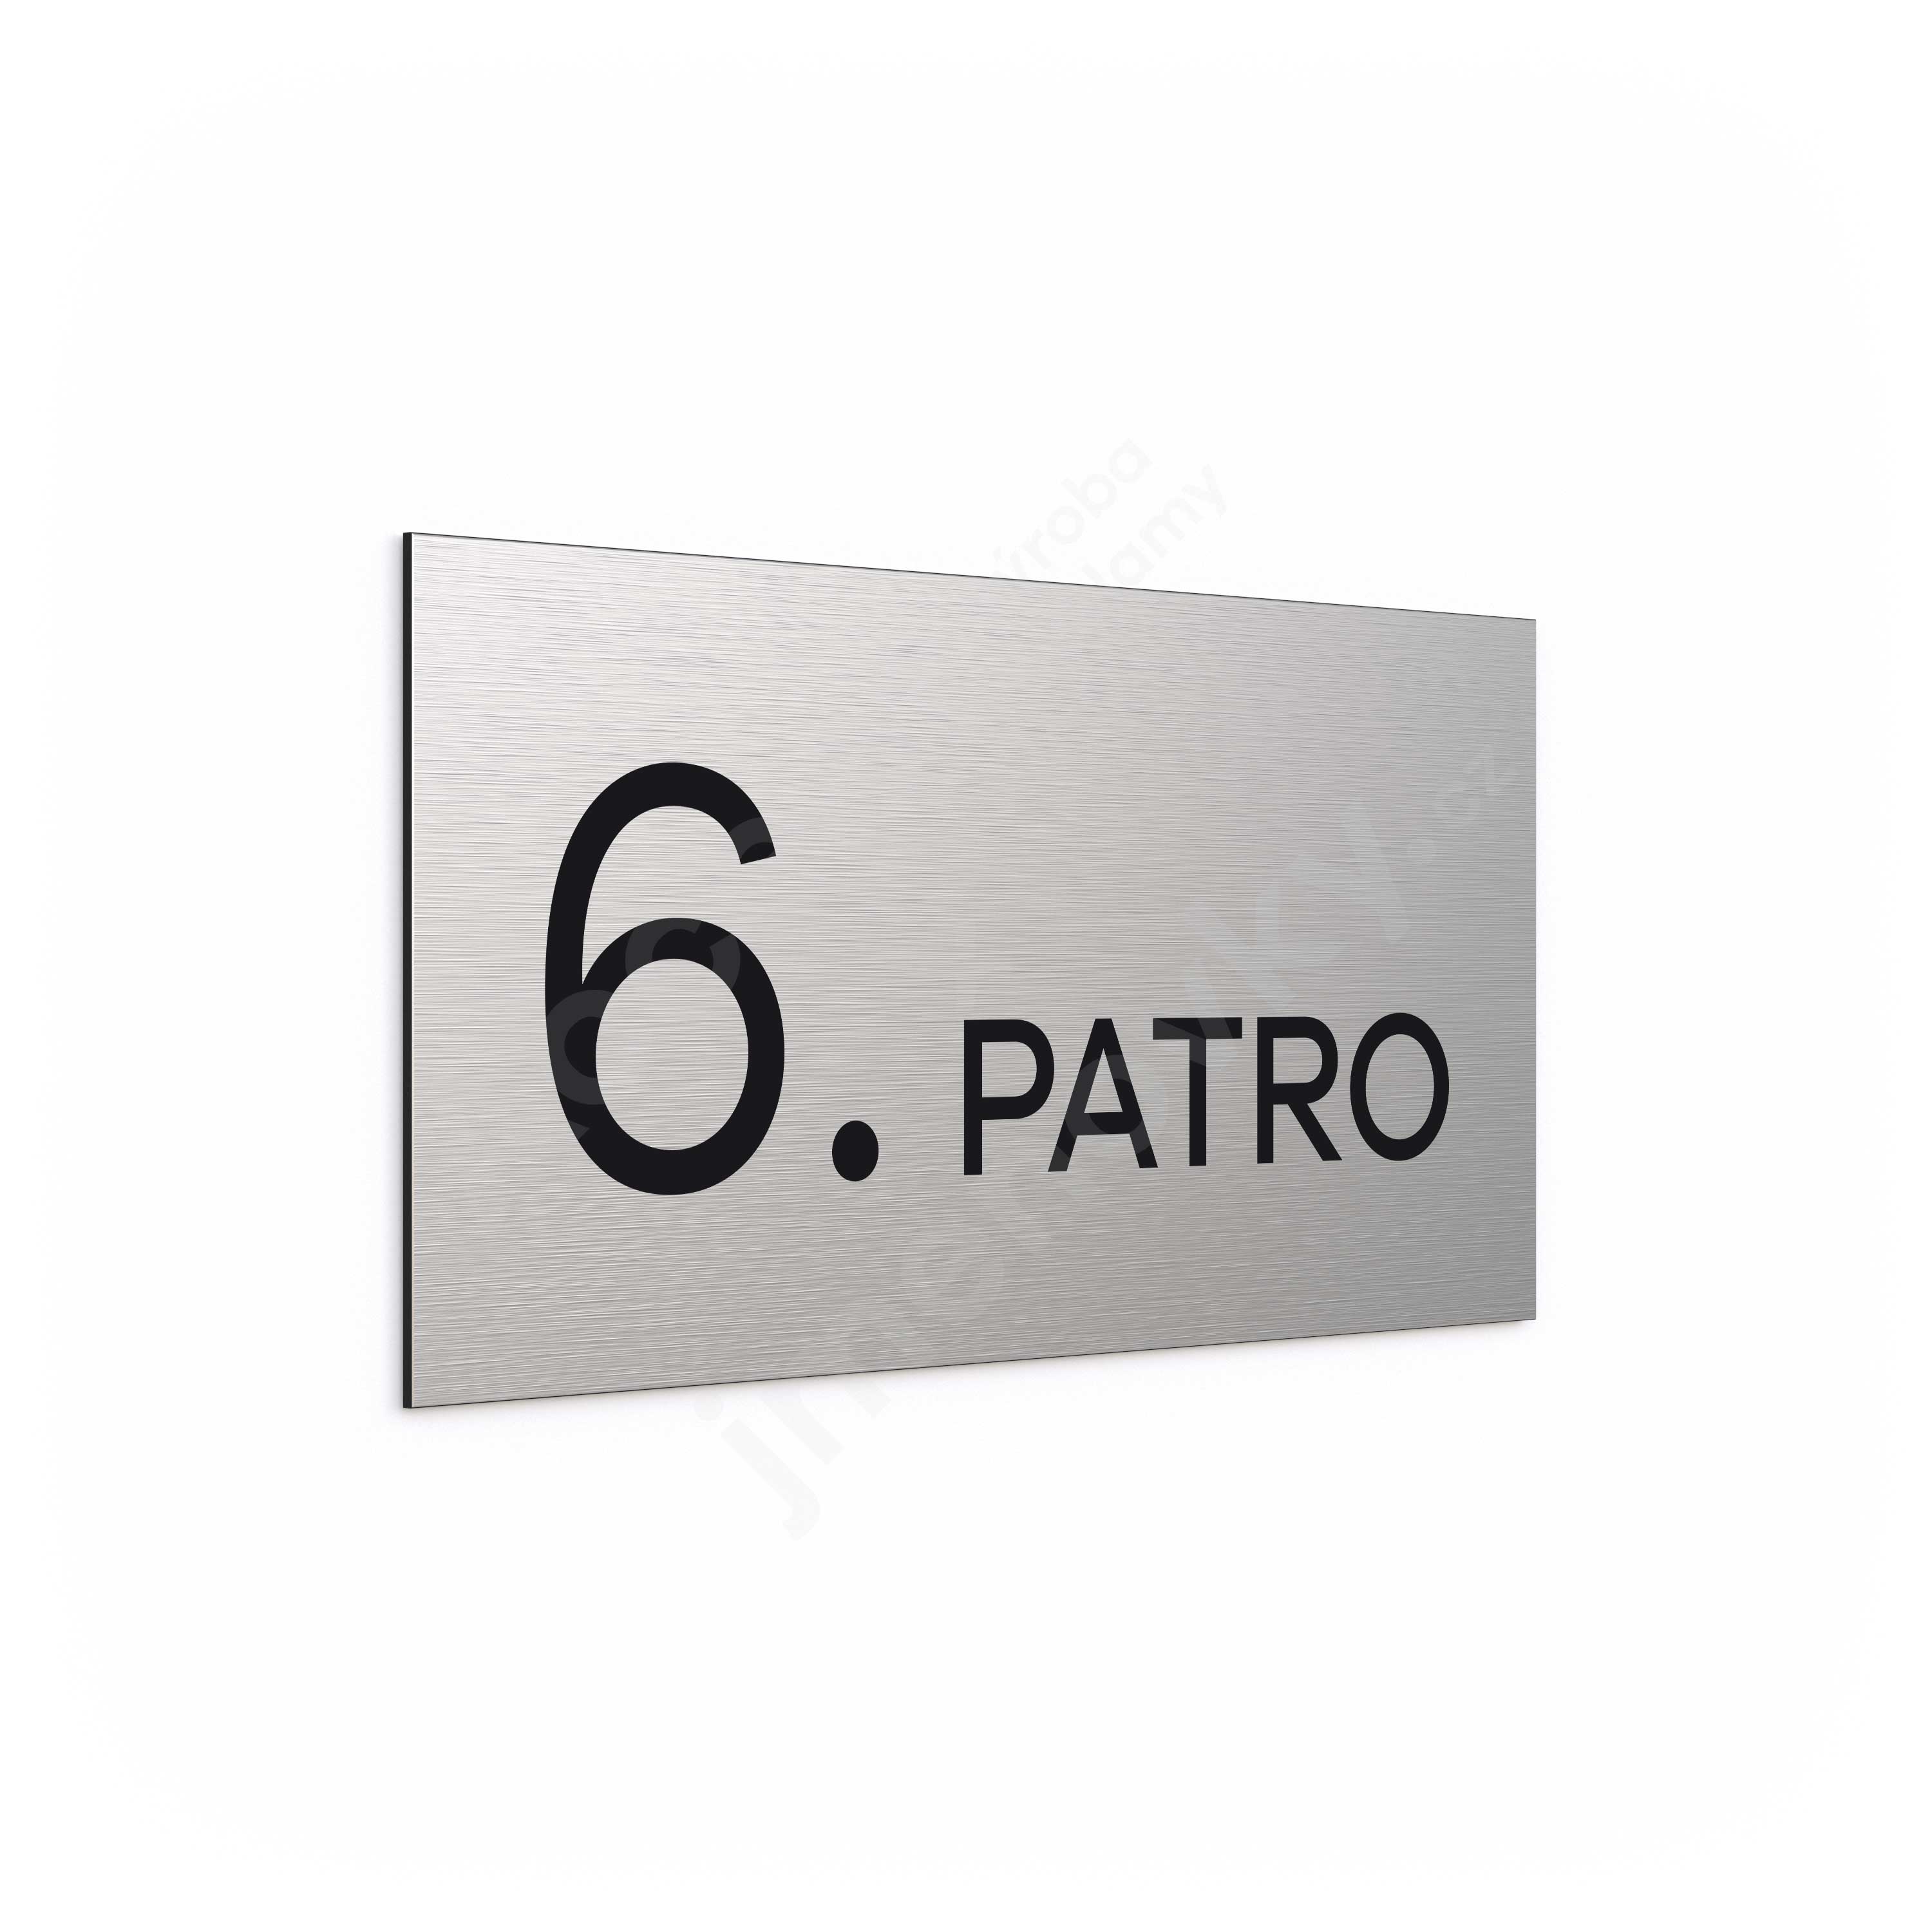 Oznaen podla "6. PATRO" - stbrn tabulka - ern popis